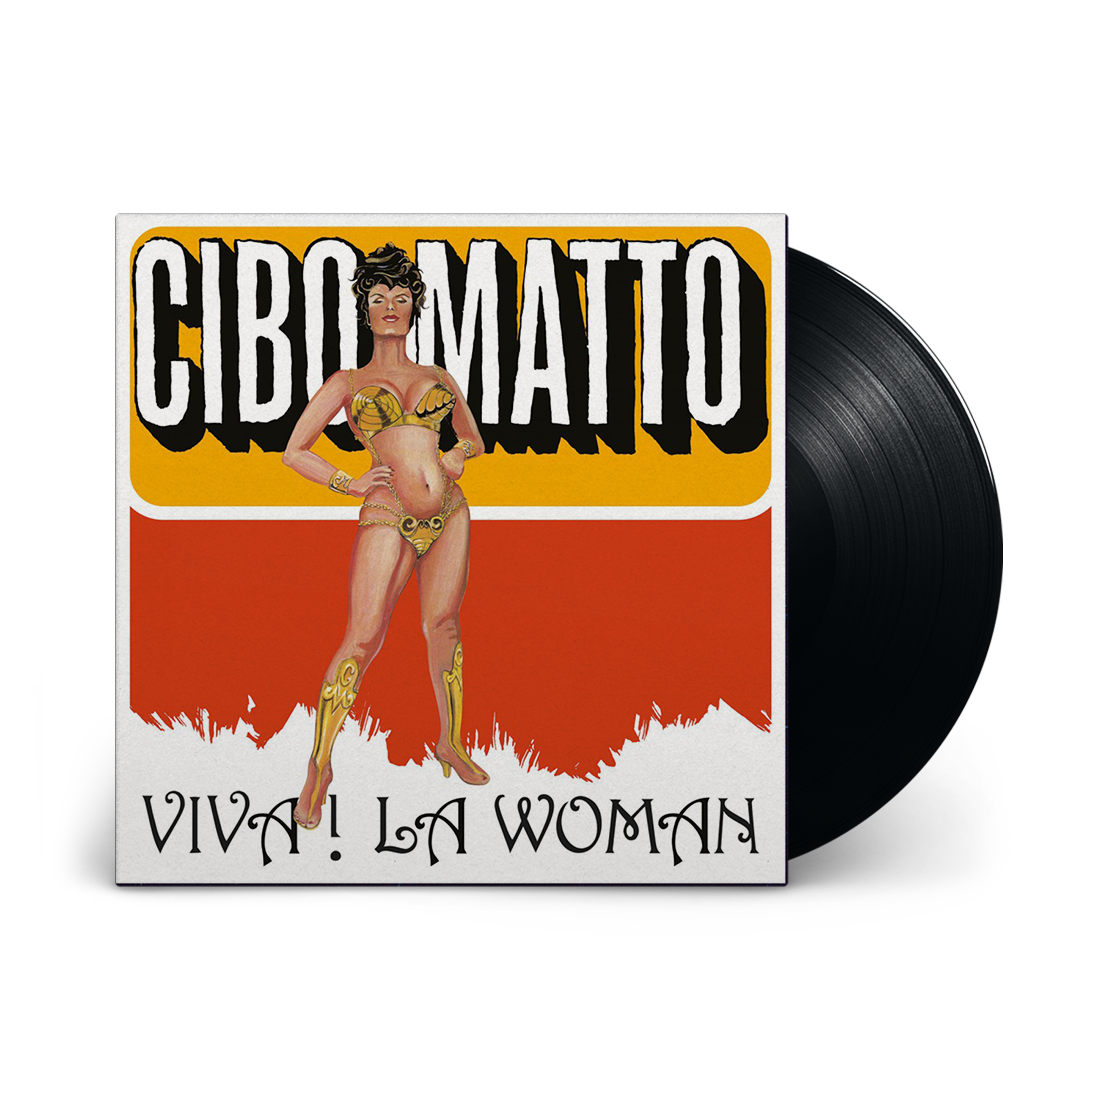 Viva La Woman: Vinyl LP